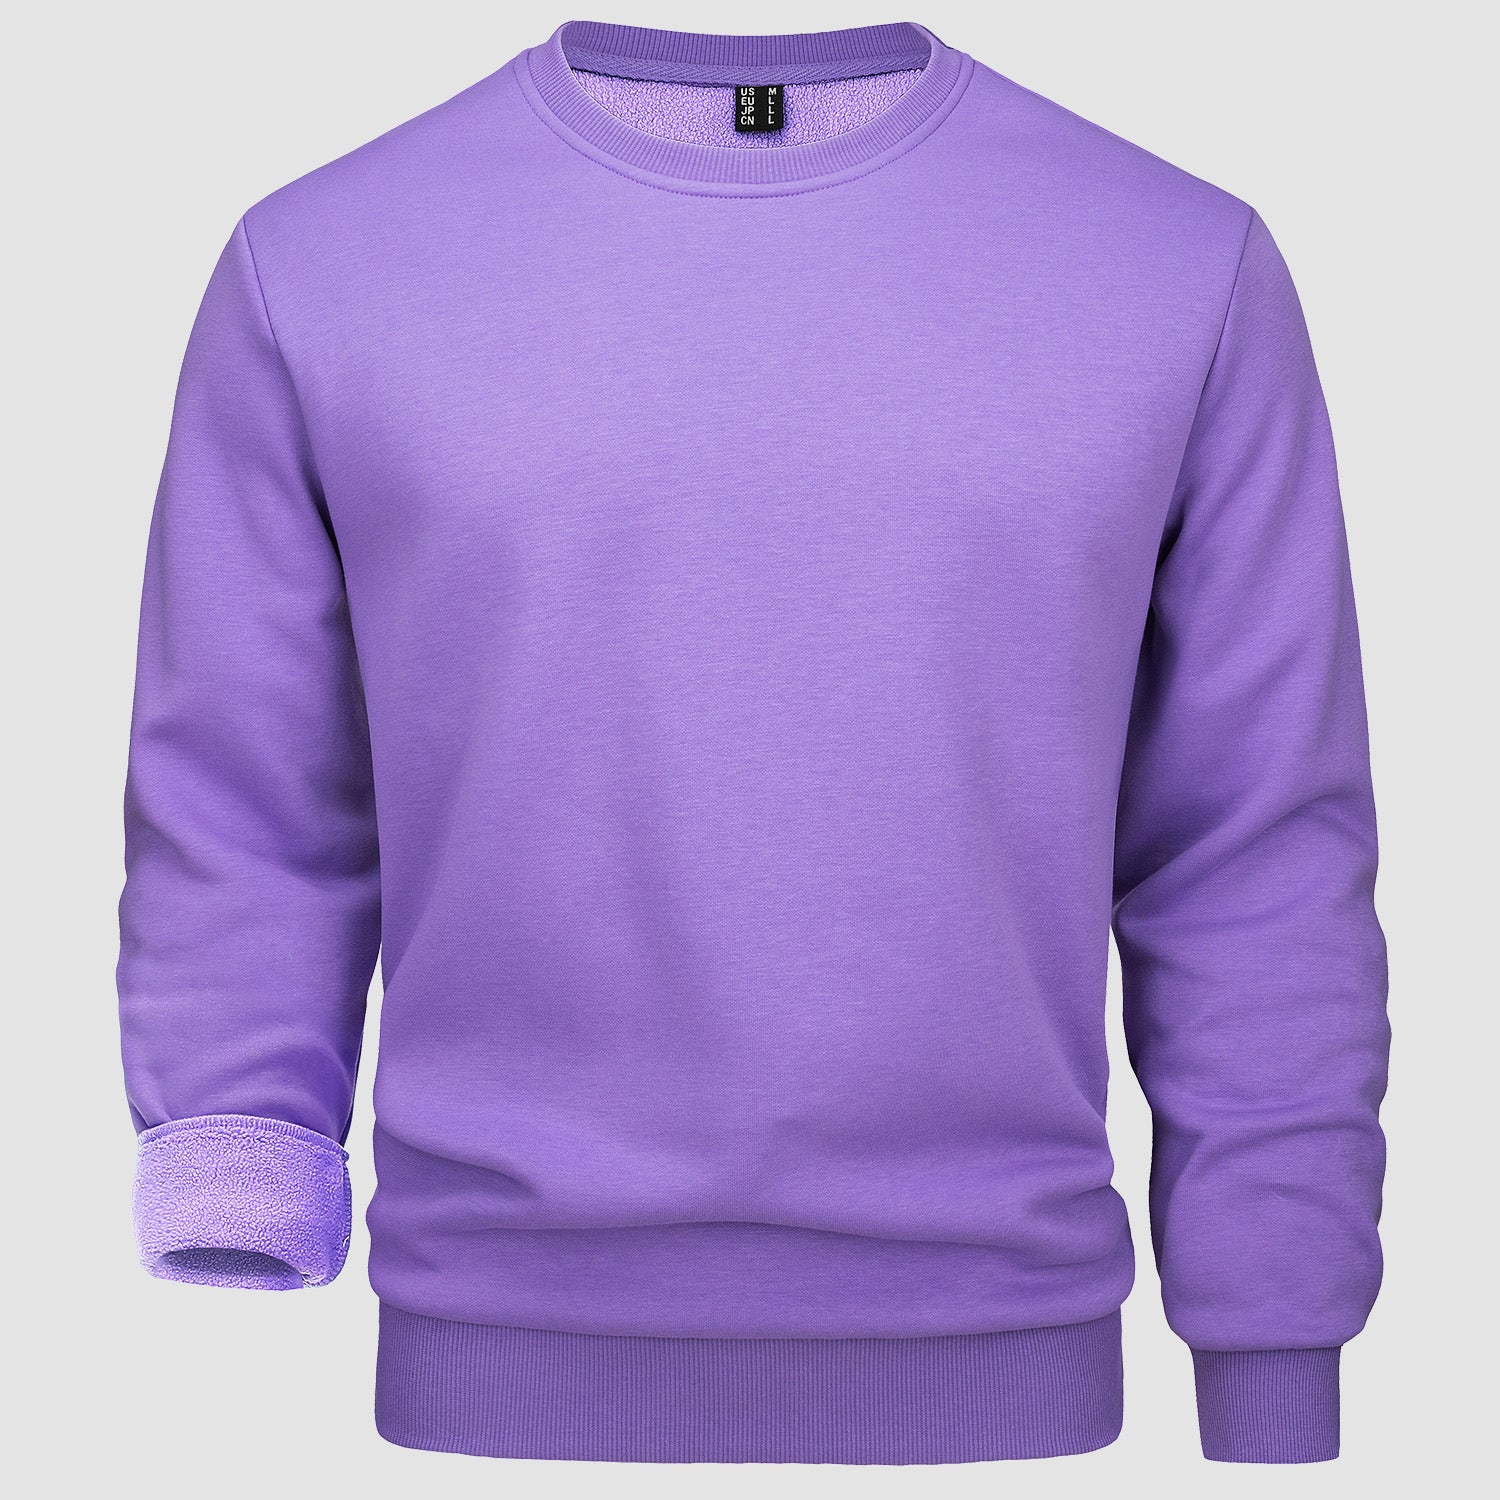 Men's Crewneck Sweatshirt Long Sleeve Casual Warm Fleece Pullover Hoodie